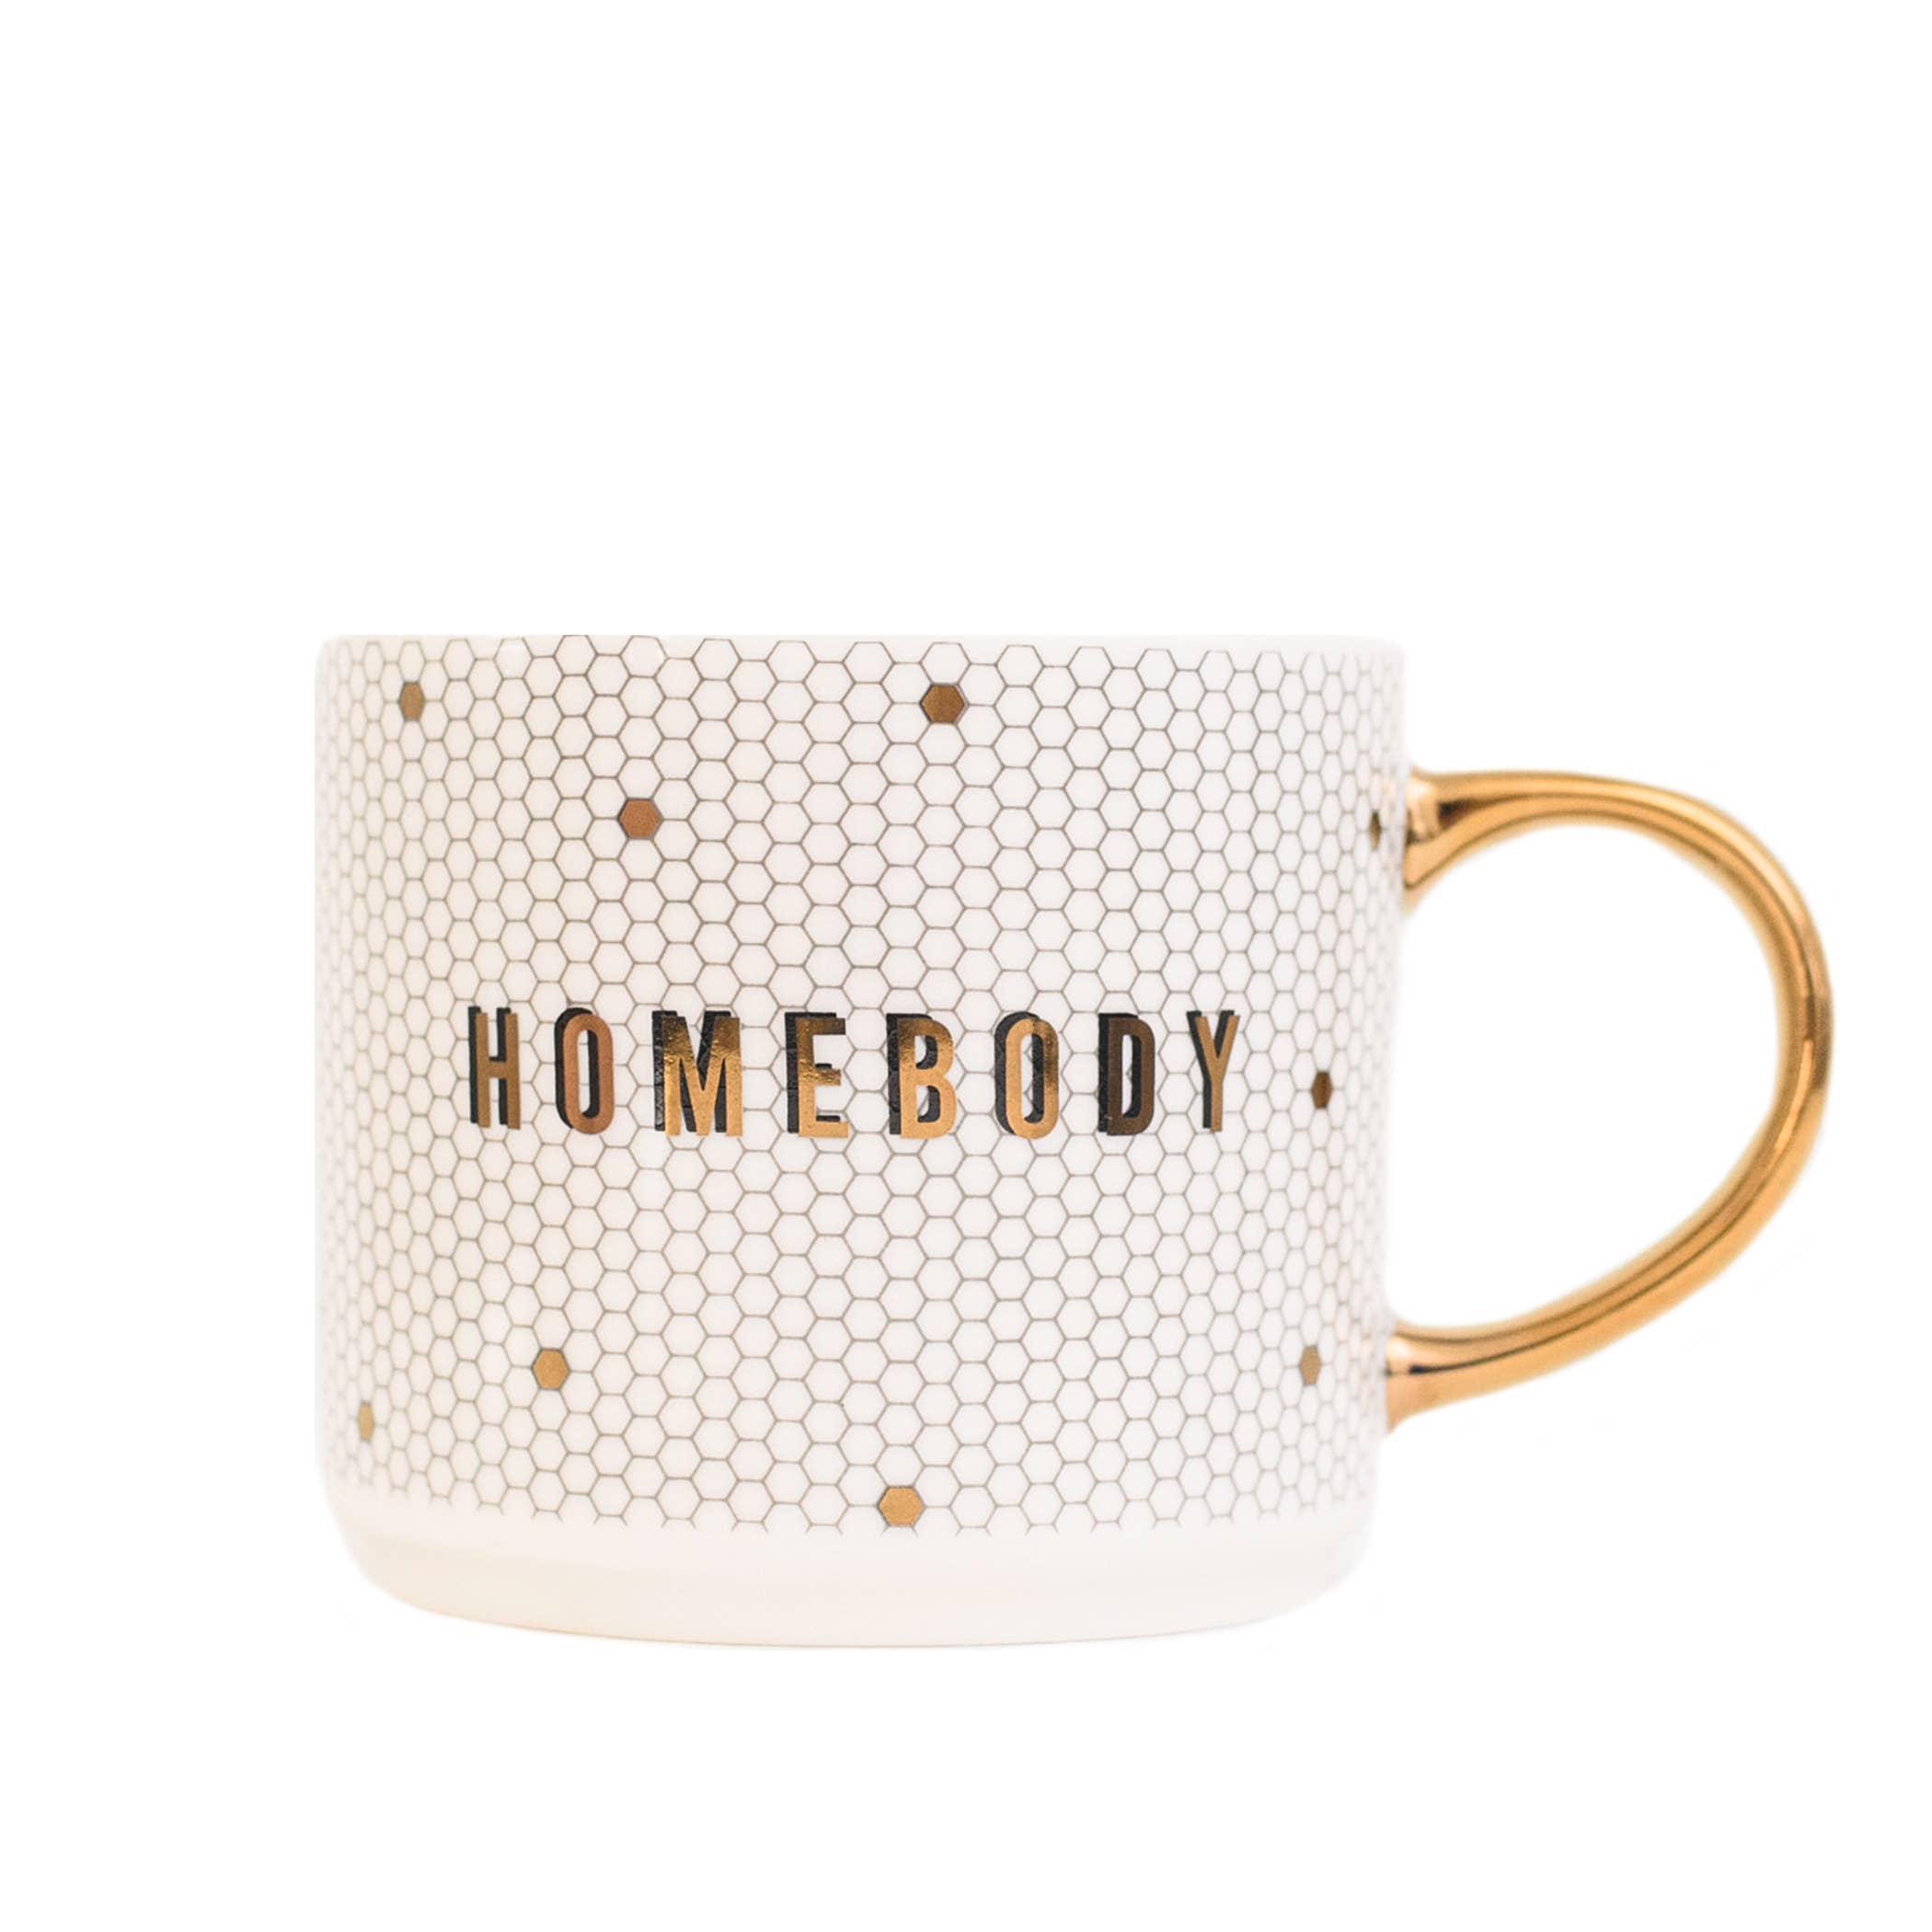 Homebody Coffee Mug - 17 oz